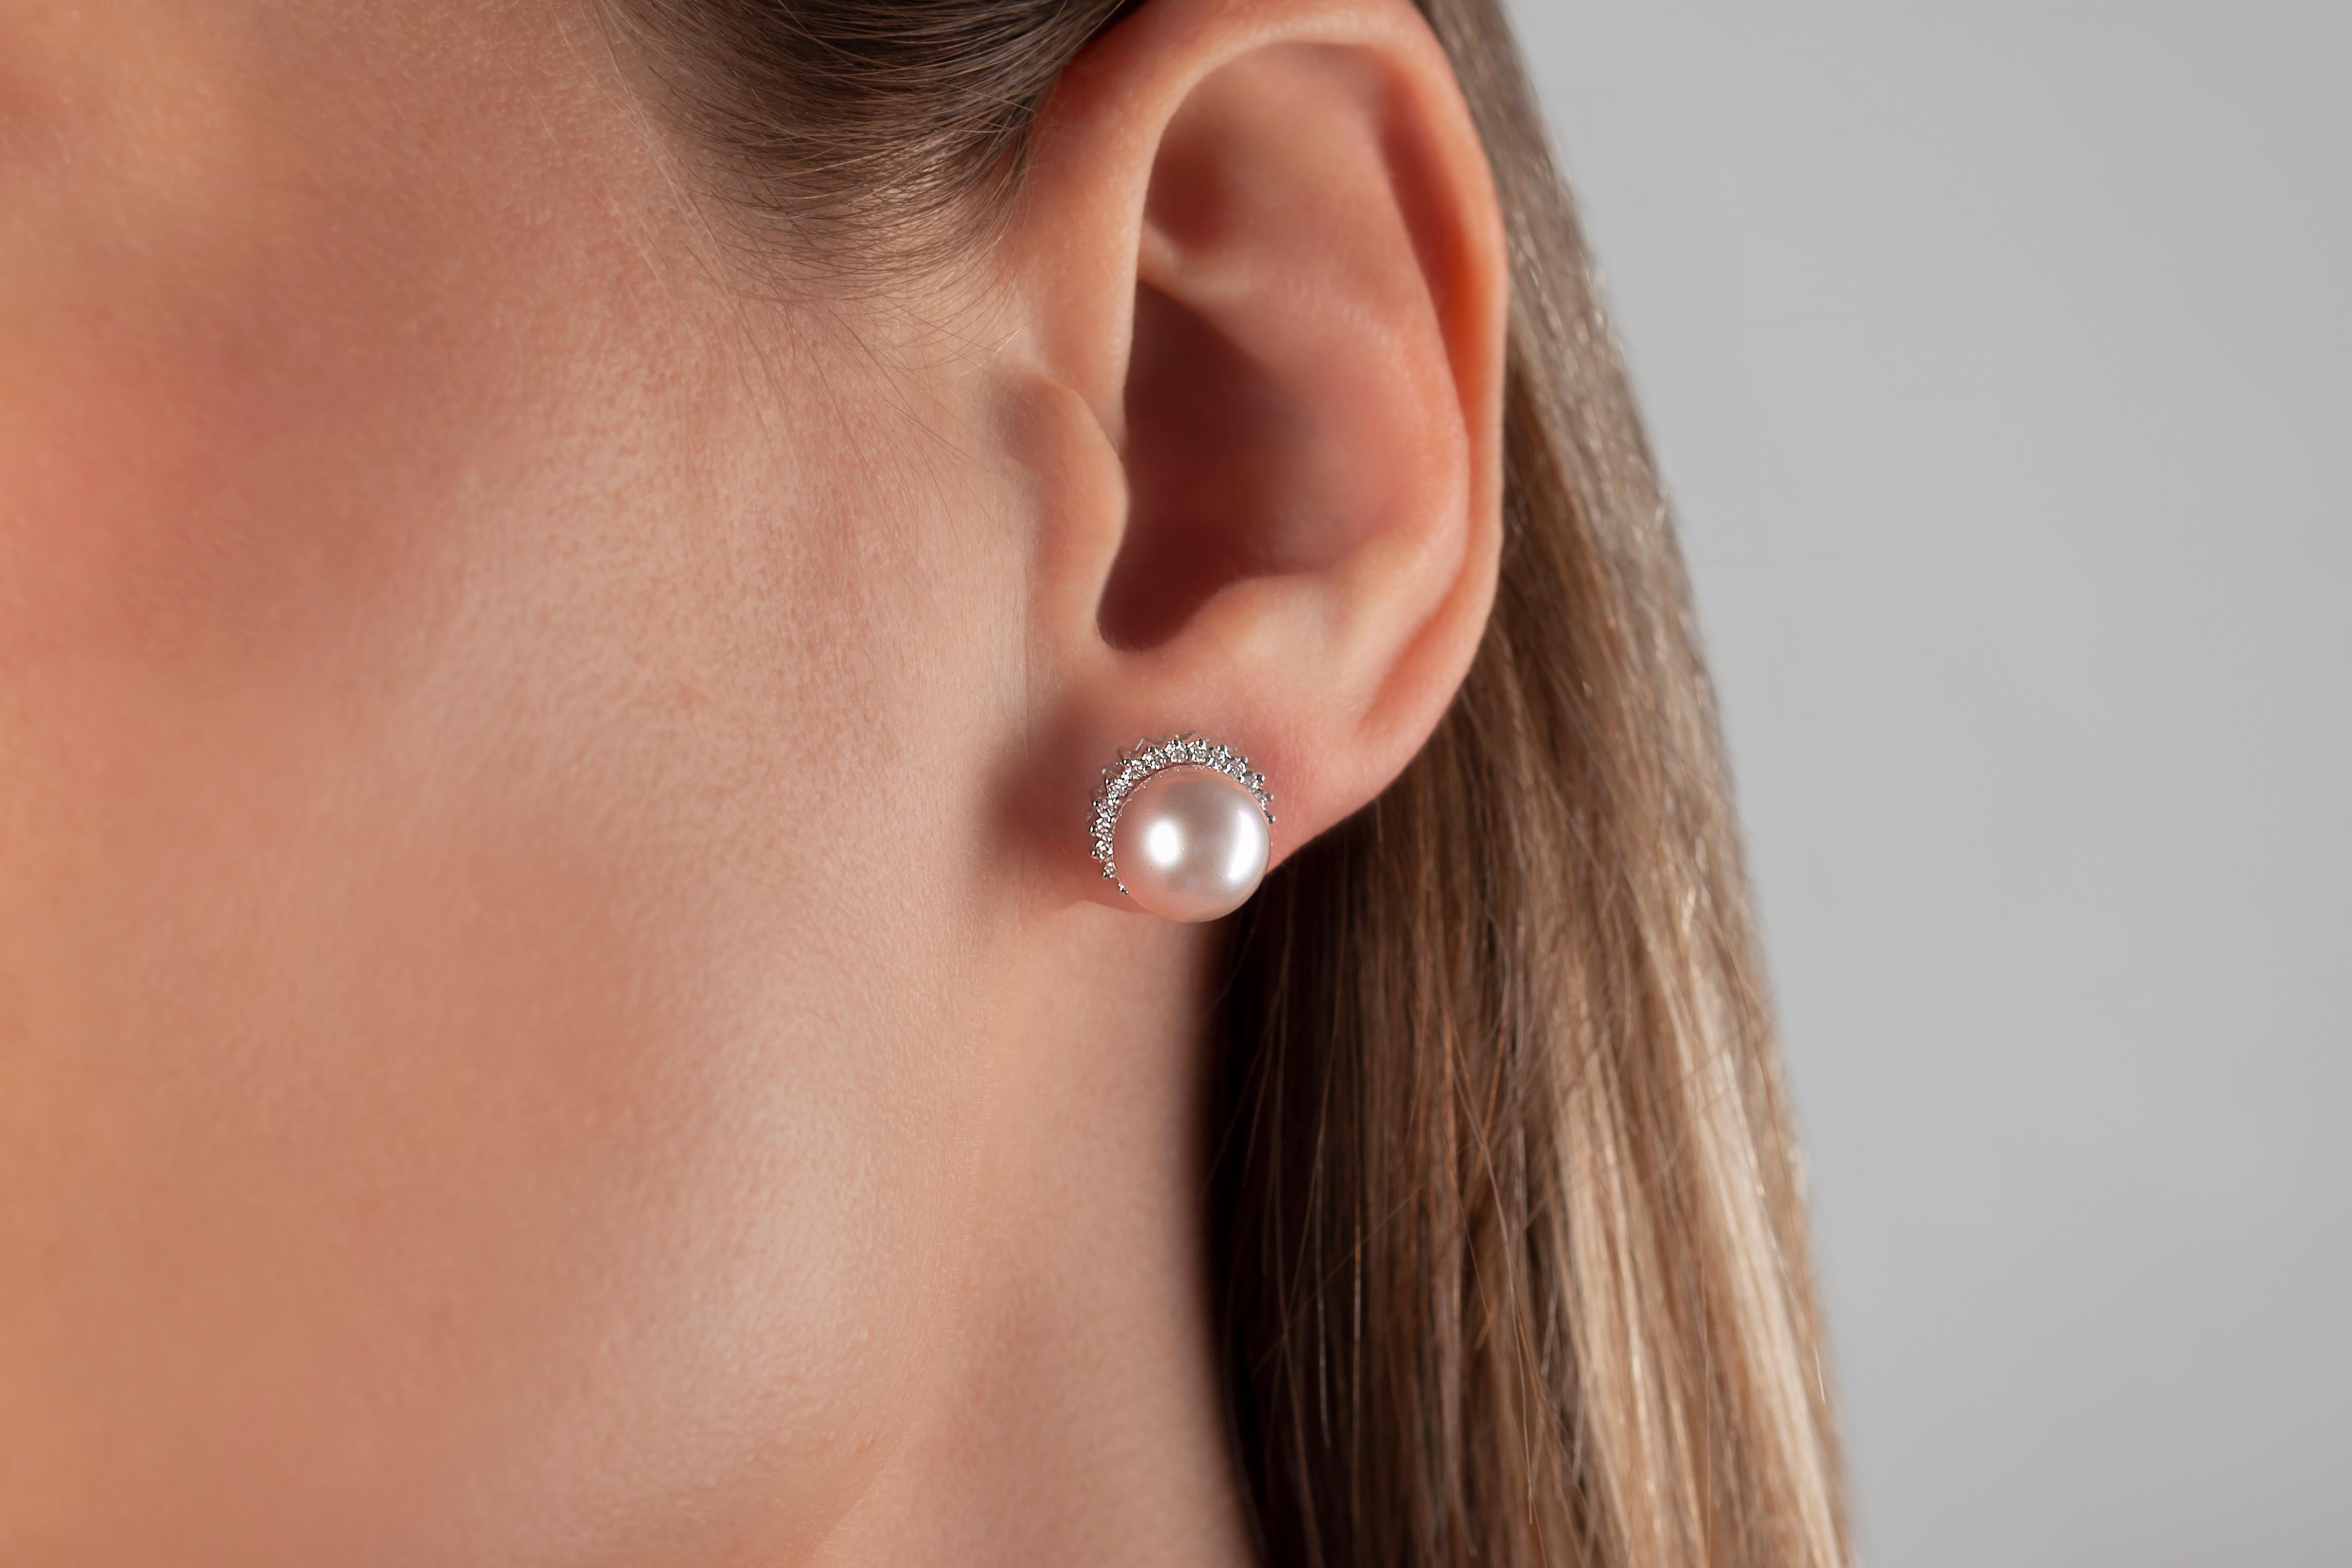 Diese Ohrringe von Yoko London verleihen einem klassischen Design eine raffinierte Wendung. Diese hübschen Ohrringe mit zartrosa Süßwasserperlen, die von einem Diamantring umgeben sind, verleihen jedem Outfit einen Hauch von Eleganz. Diese